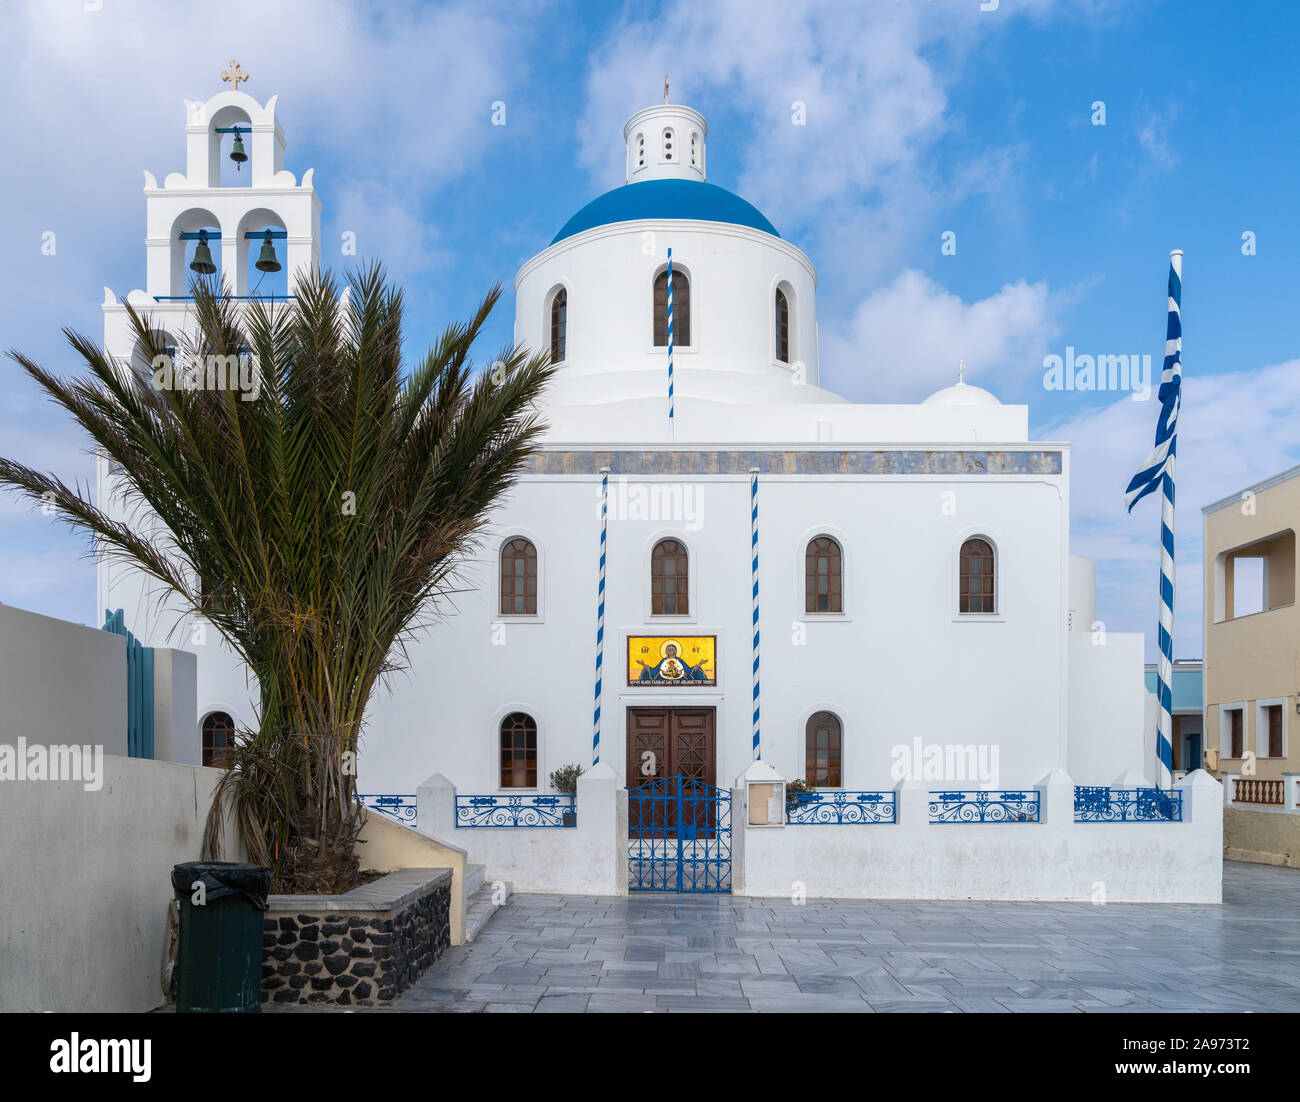 1 Nov 2019 - Santorini, Grecia. Una chiesa greco ortodossa Panagia Platsani in Oia - Santorini. Foto Stock